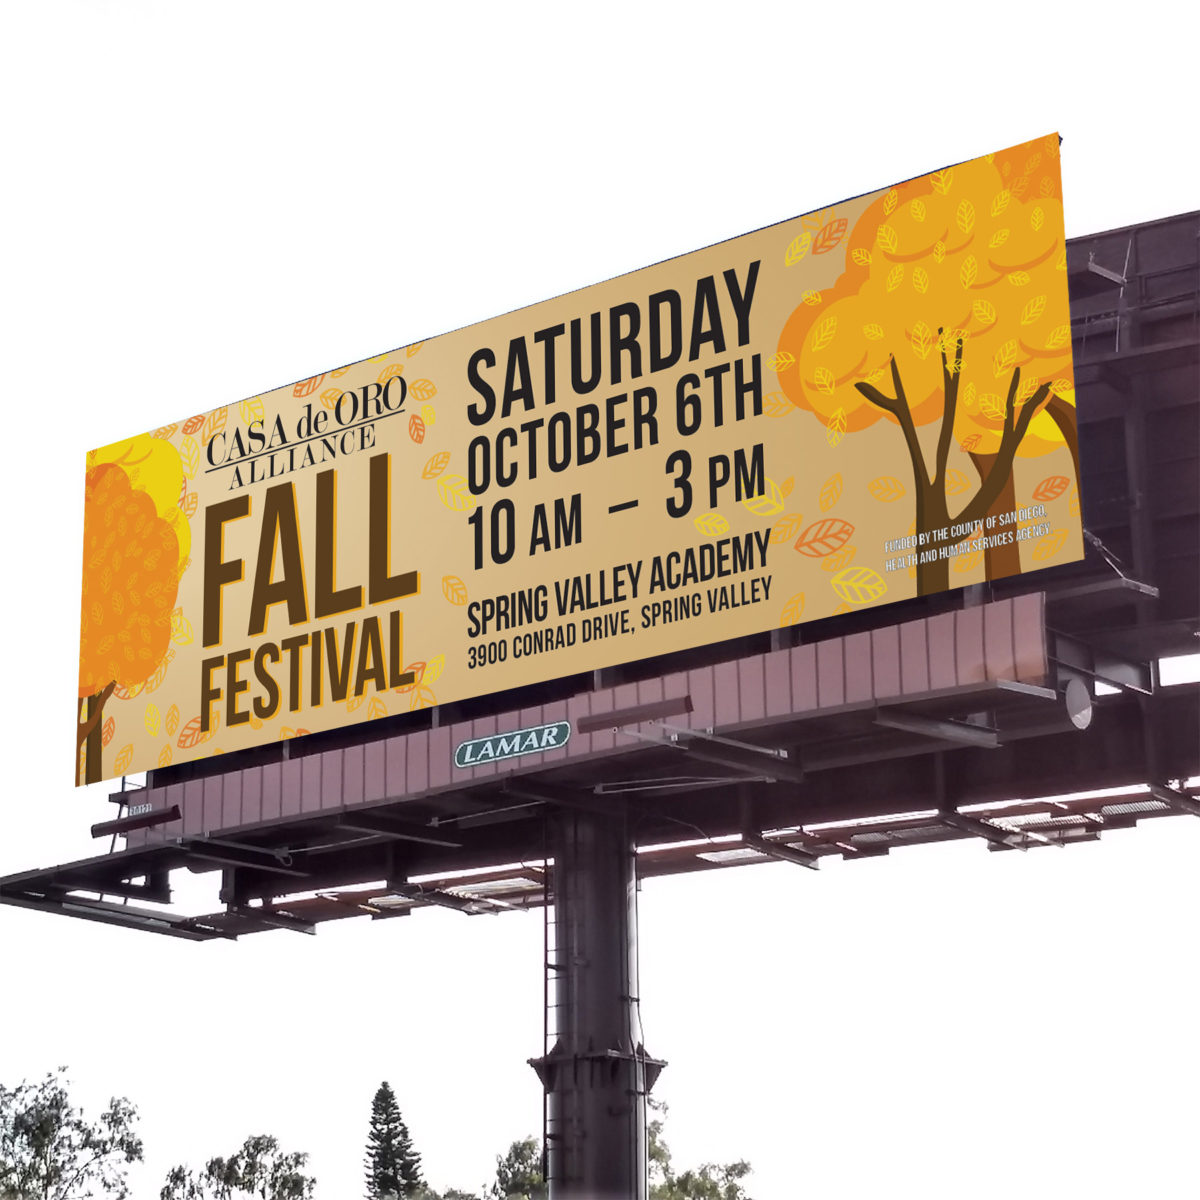 Casa de Oro Alliance Fall Festival 2018 Poster, Bookmark, and Billboard